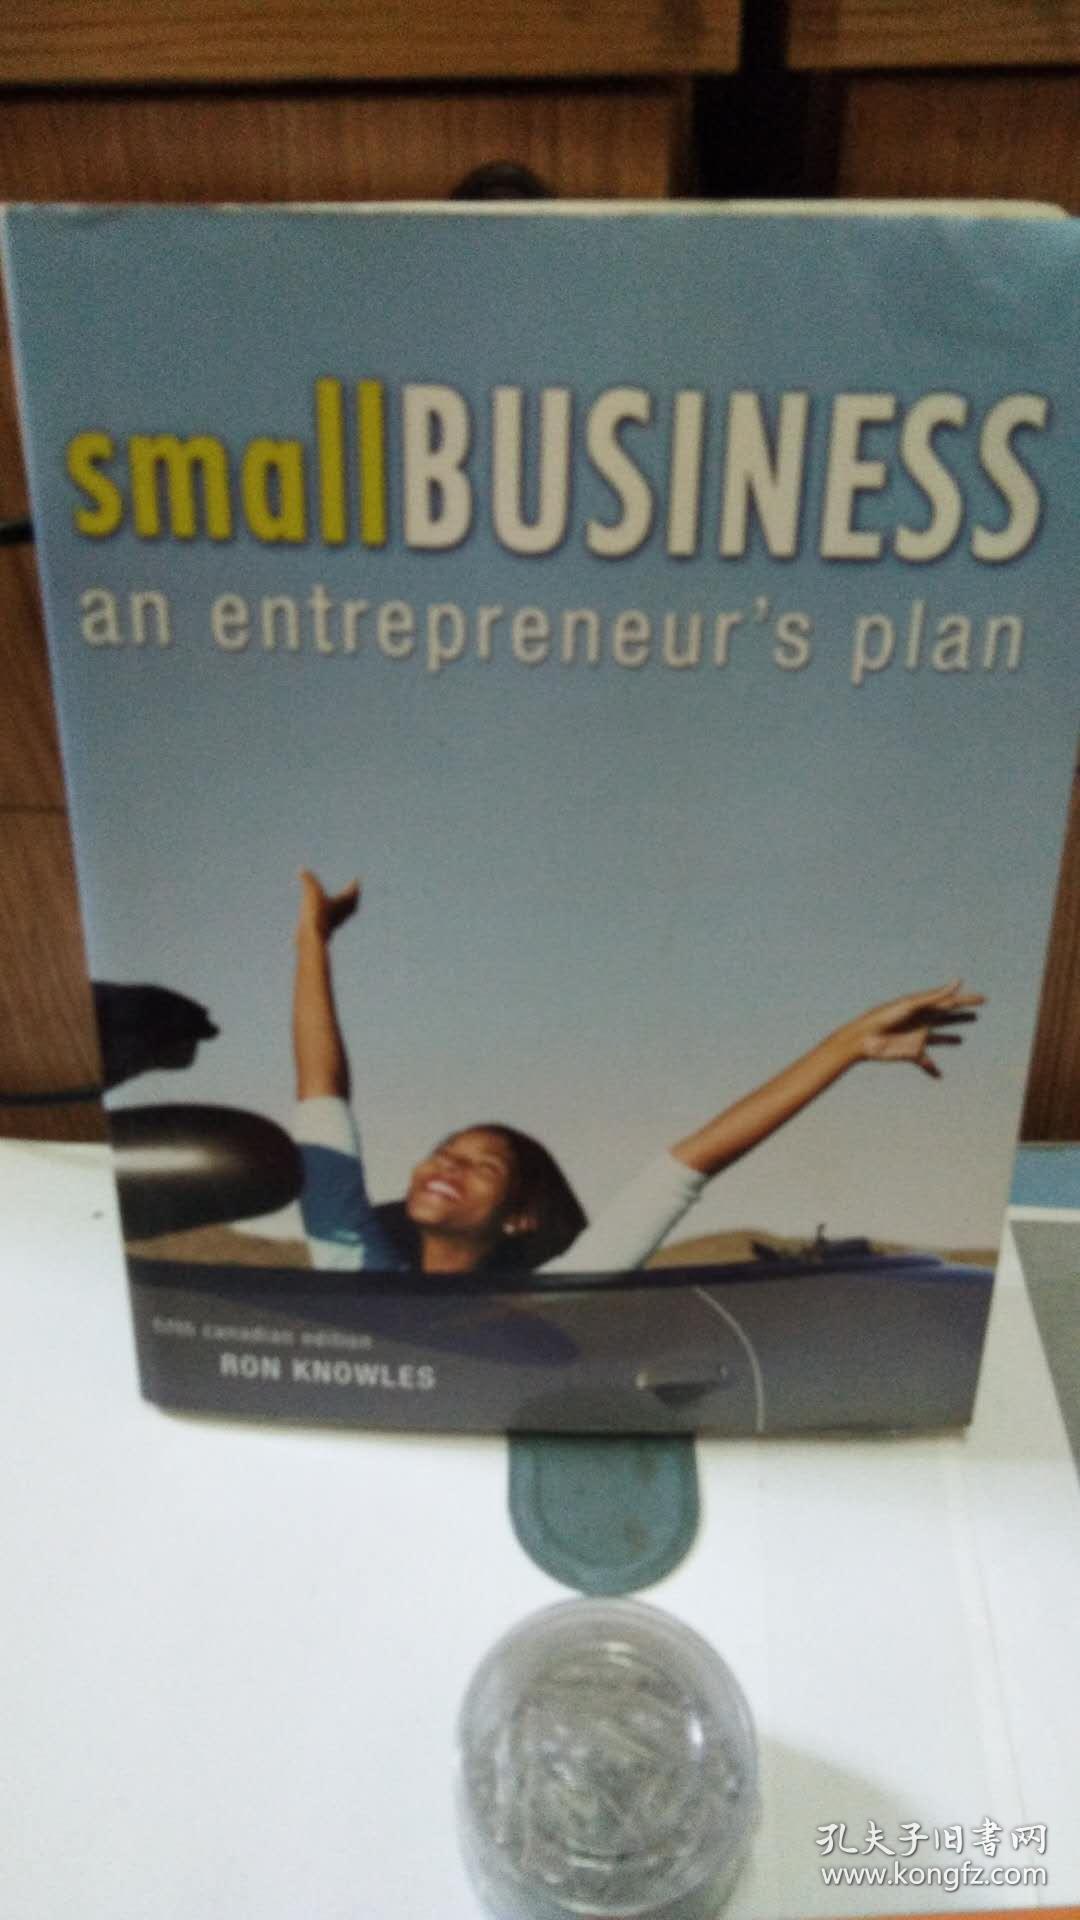 小企业是企业家 英文原版 Small Business 